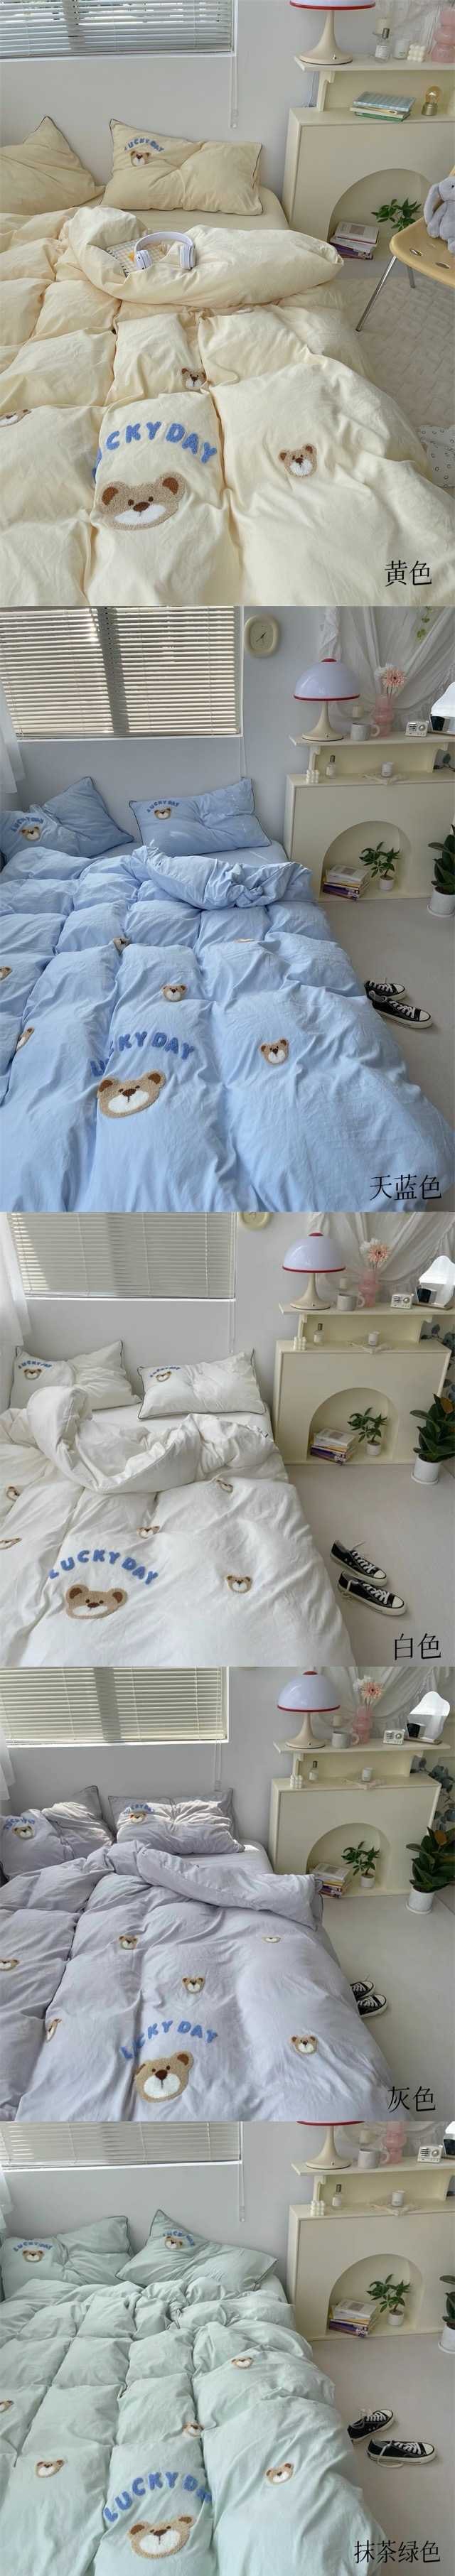 【中国直邮】Lullabuy 奶噗噗的小熊三件套四季居家床品套装床单被套枕套透气柔软可爱(床单*1+被套*1+枕套*1)  Twin Size 抹茶绿色